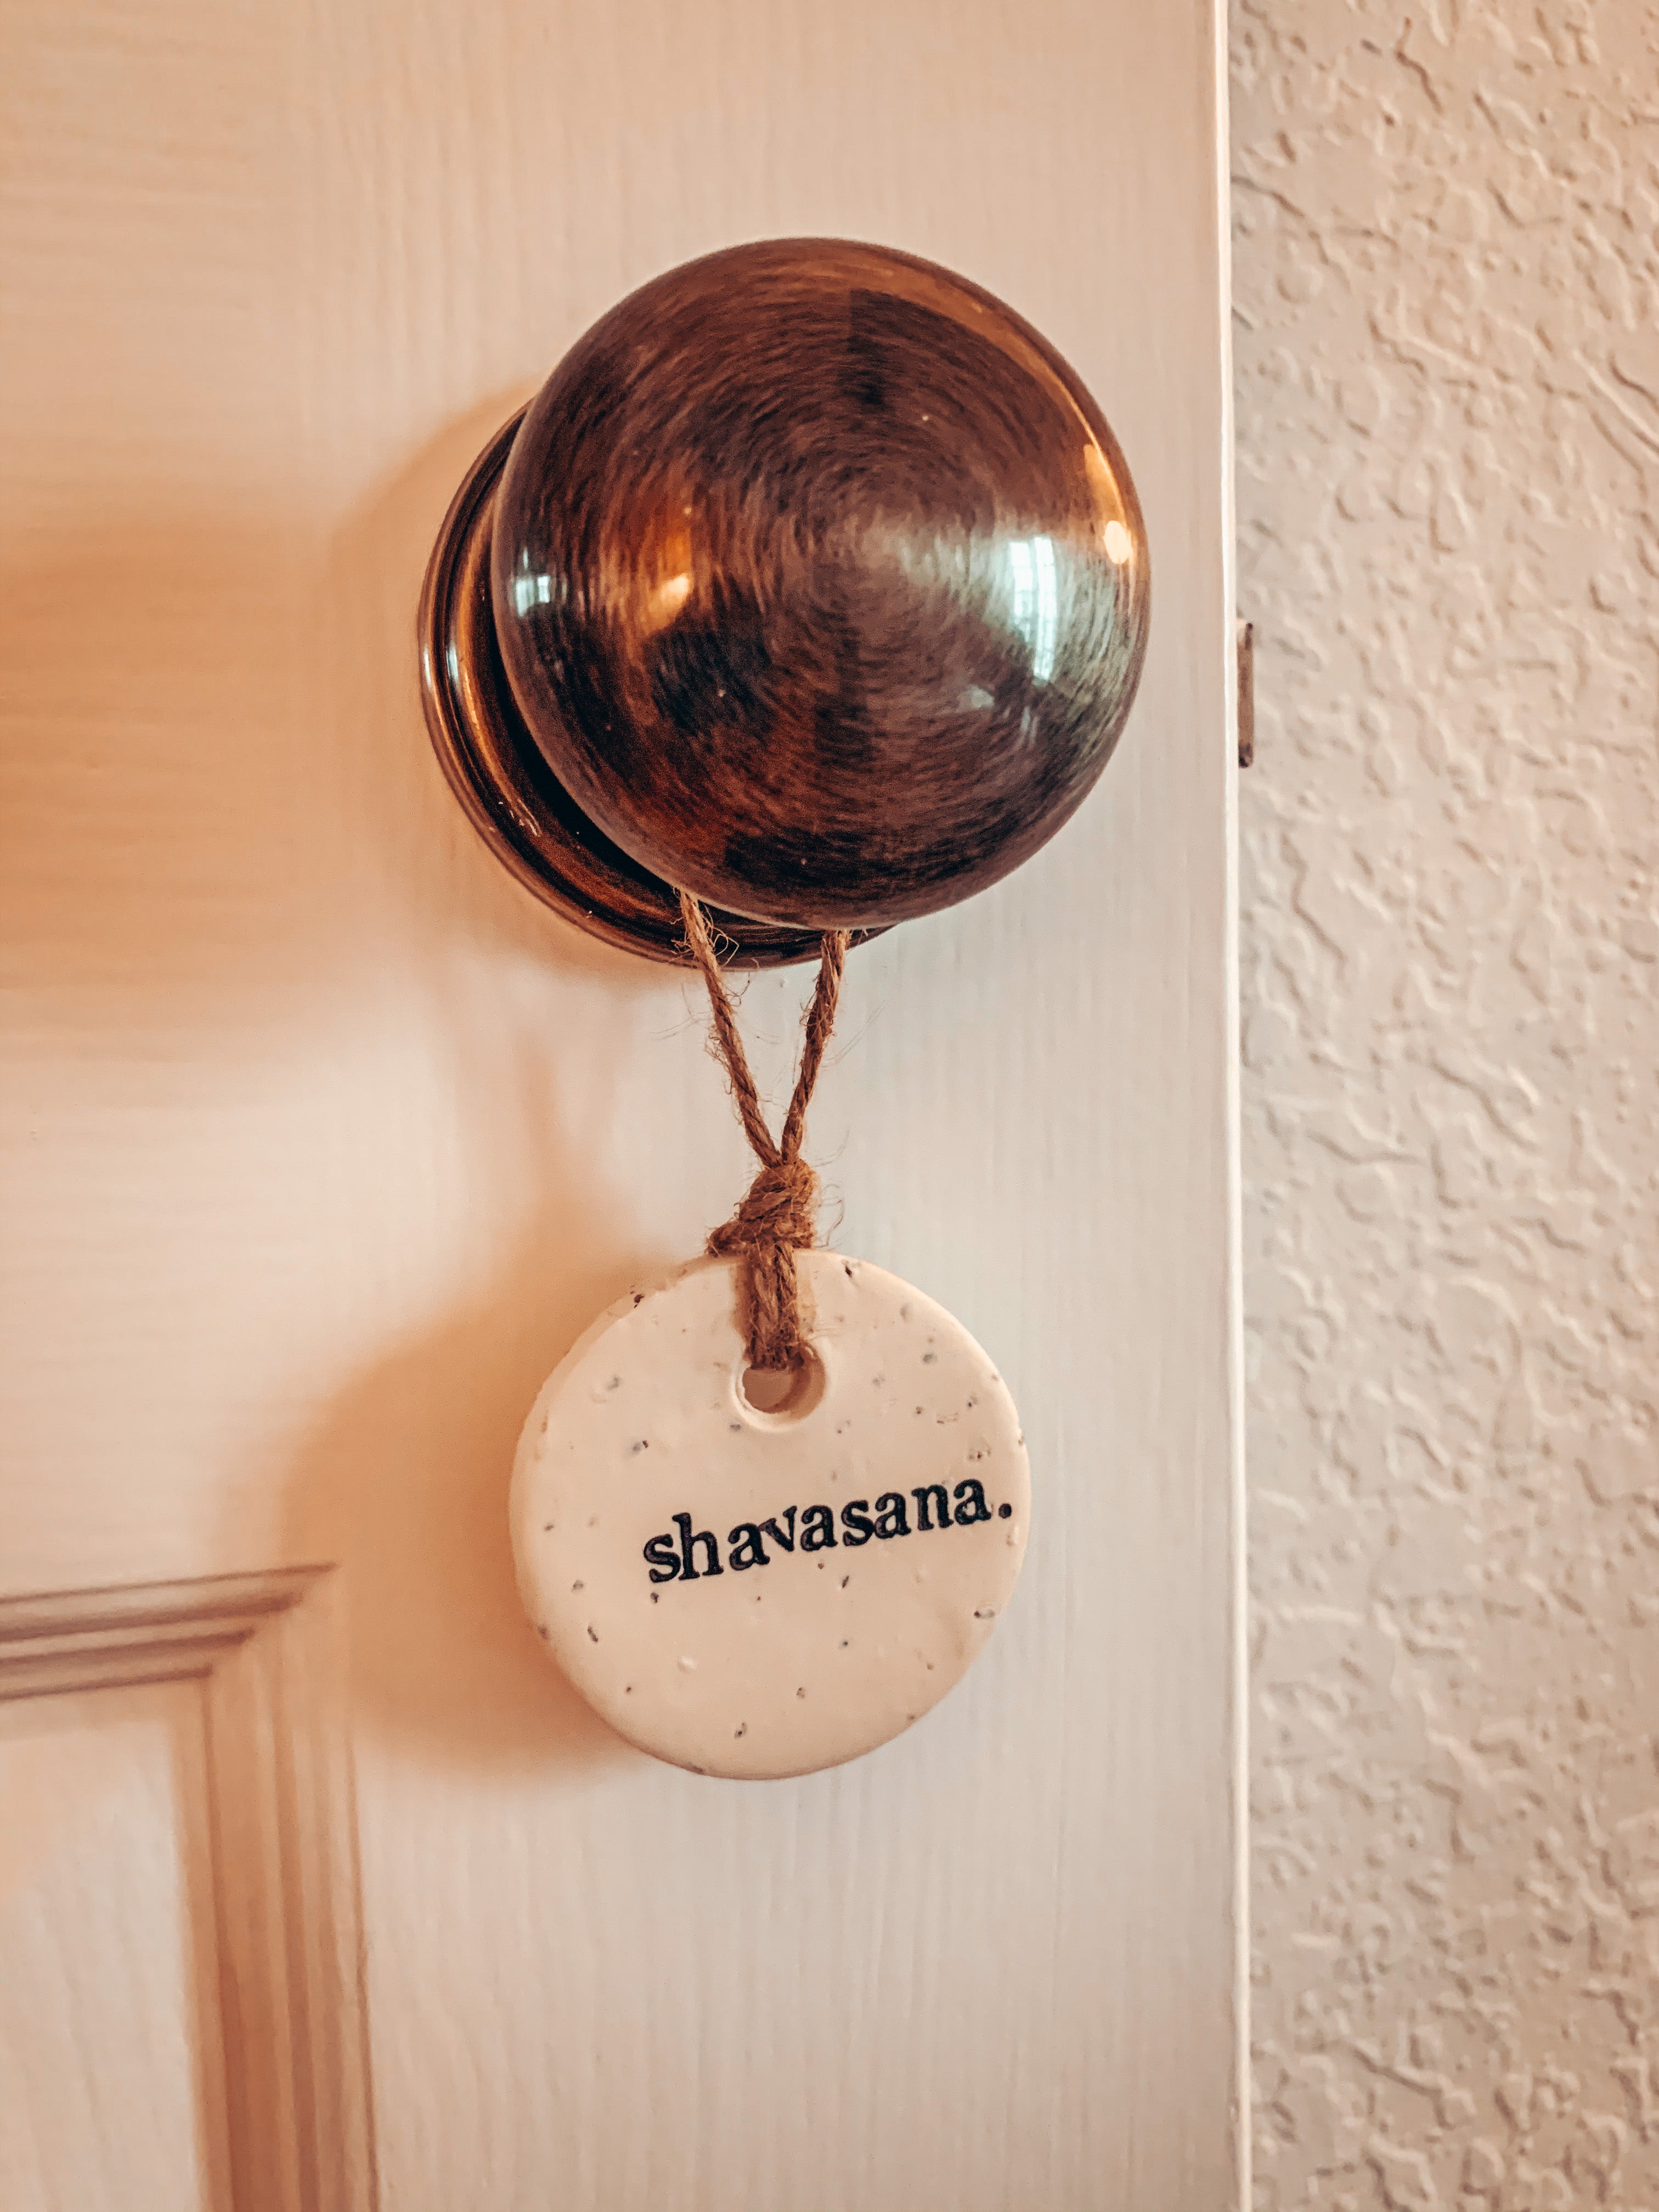 ssshvasana ceramic "do not disturb" fob hangs on door handle